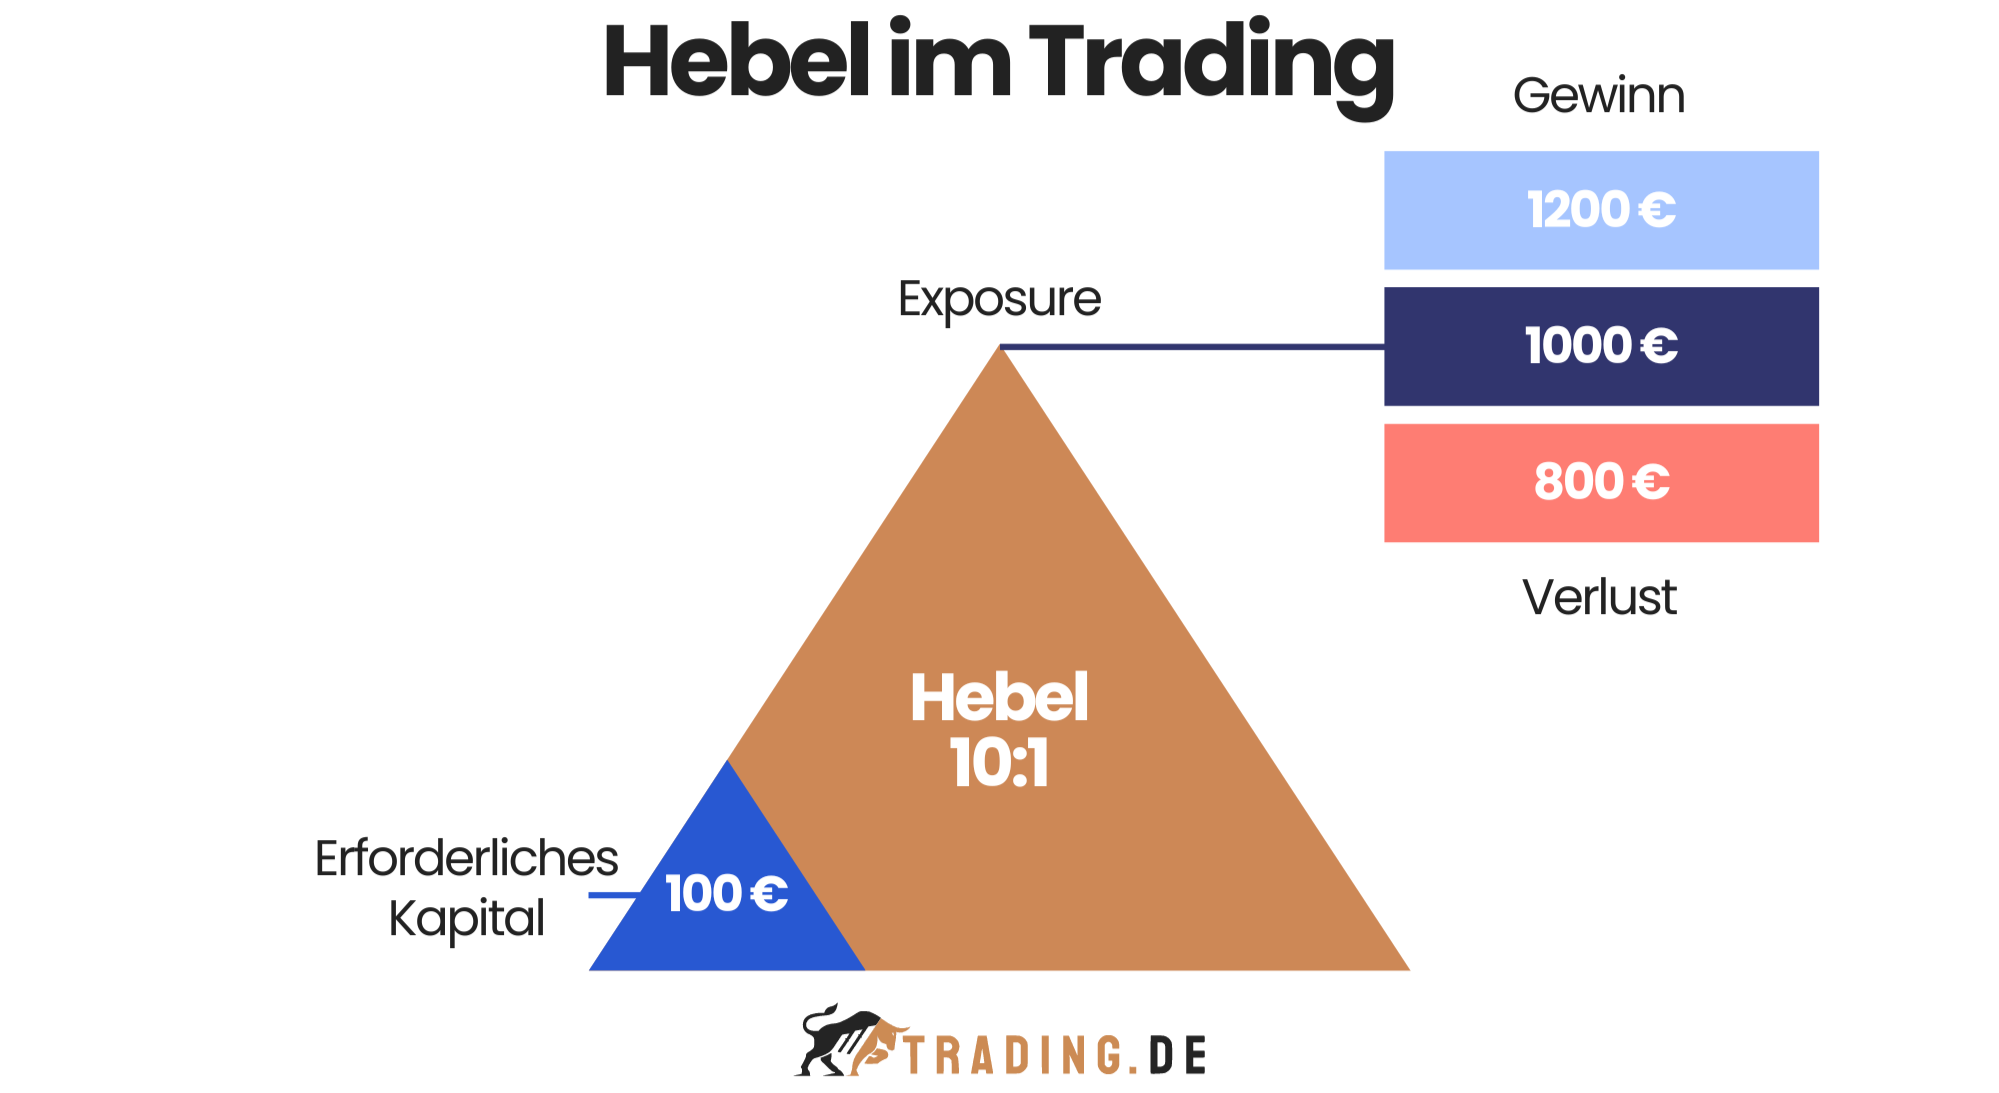 Grafik zeigt die Hebelwirkung im Trading: 10:1 Hebel, 100 € erforderliches Kapital, 1000 € Exposure.